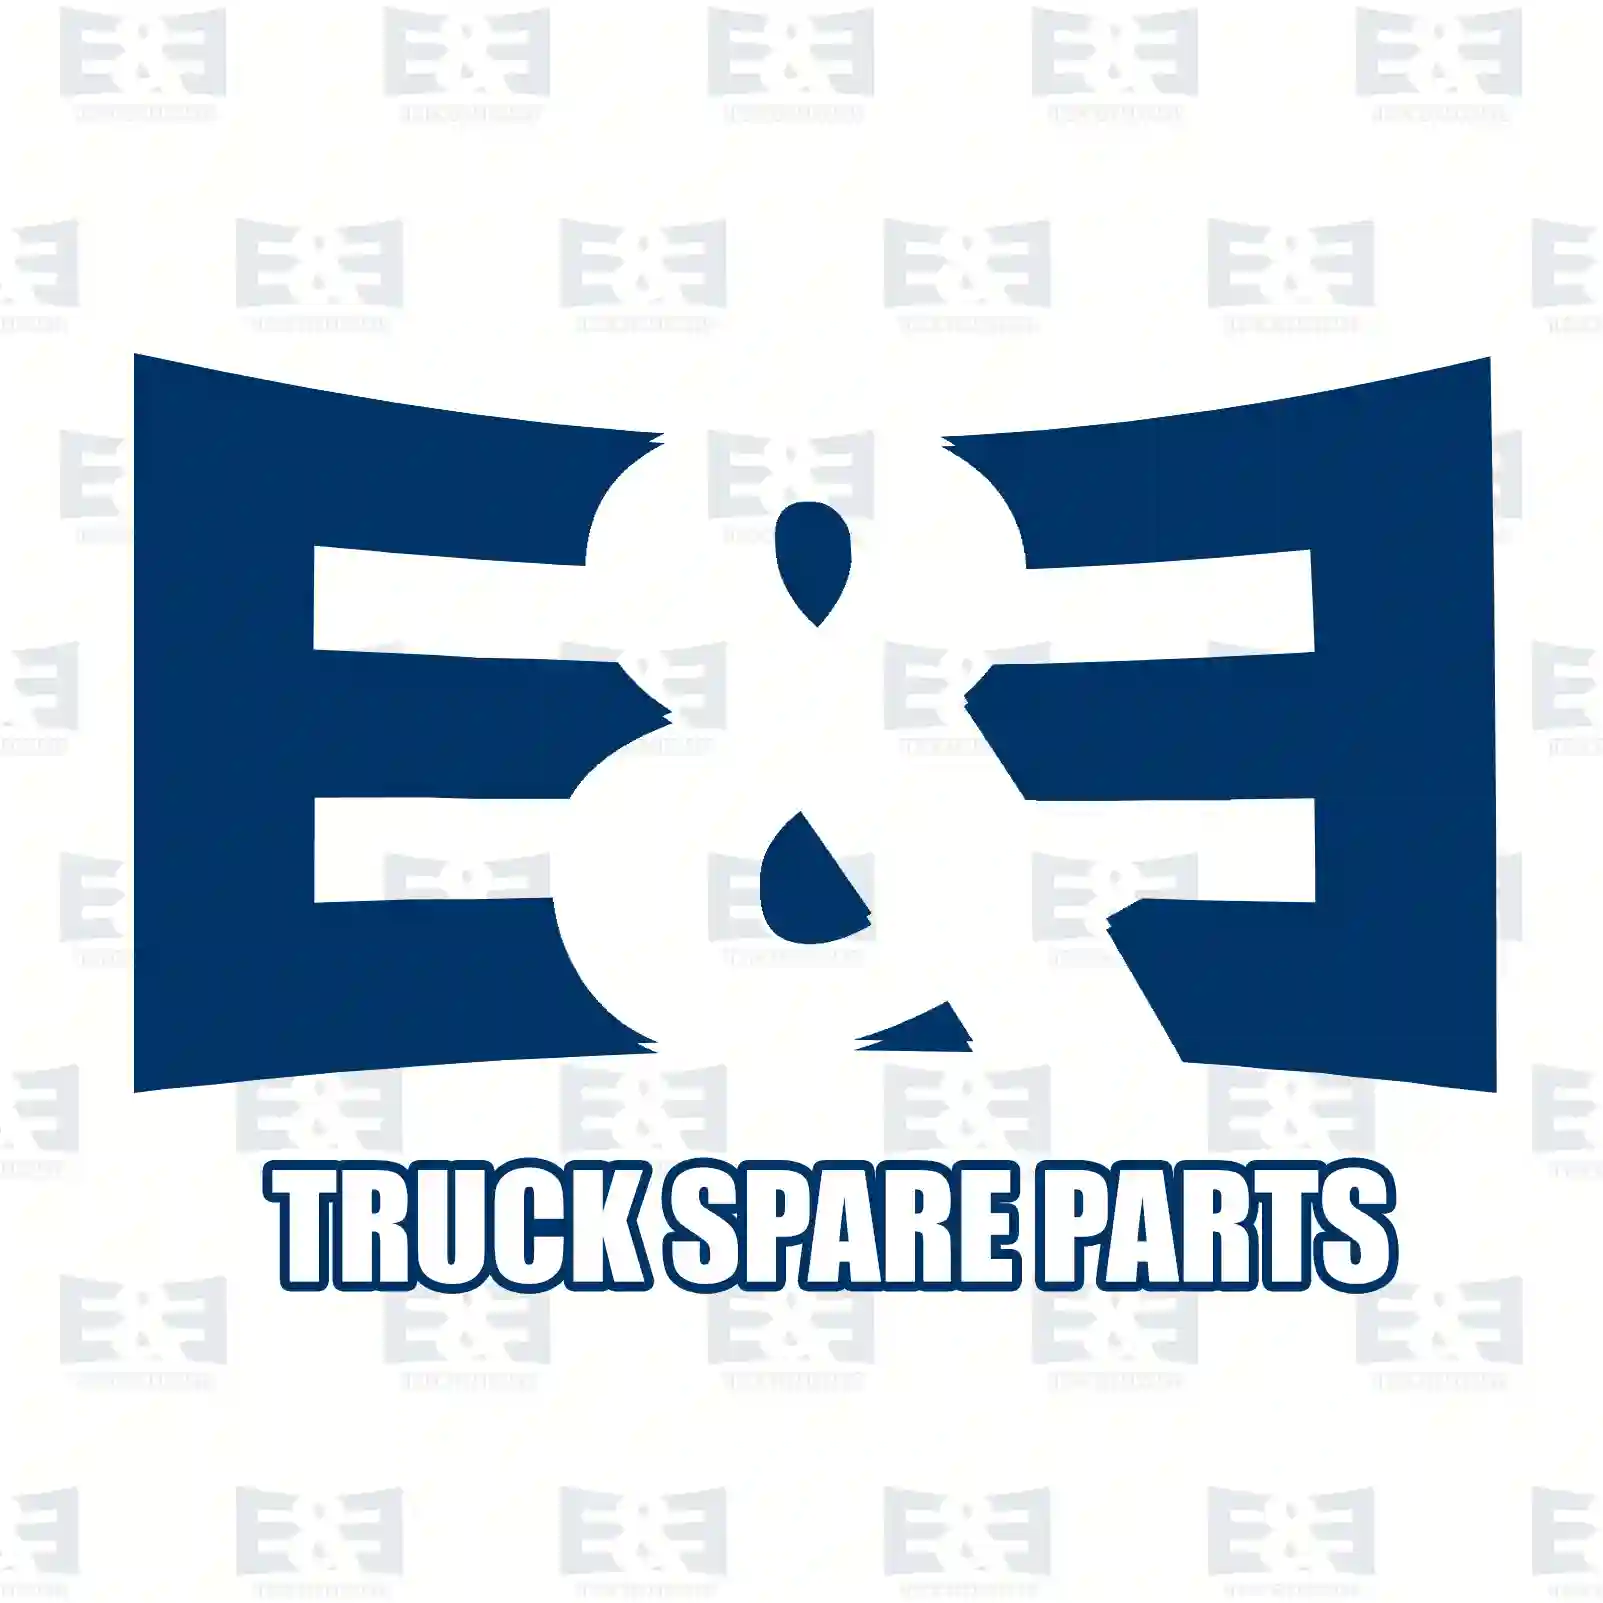 Wiper blade set, 2E2280158, 02994628, 99439209, ZG21315-0008 ||  2E2280158 E&E Truck Spare Parts | Truck Spare Parts, Auotomotive Spare Parts Wiper blade set, 2E2280158, 02994628, 99439209, ZG21315-0008 ||  2E2280158 E&E Truck Spare Parts | Truck Spare Parts, Auotomotive Spare Parts